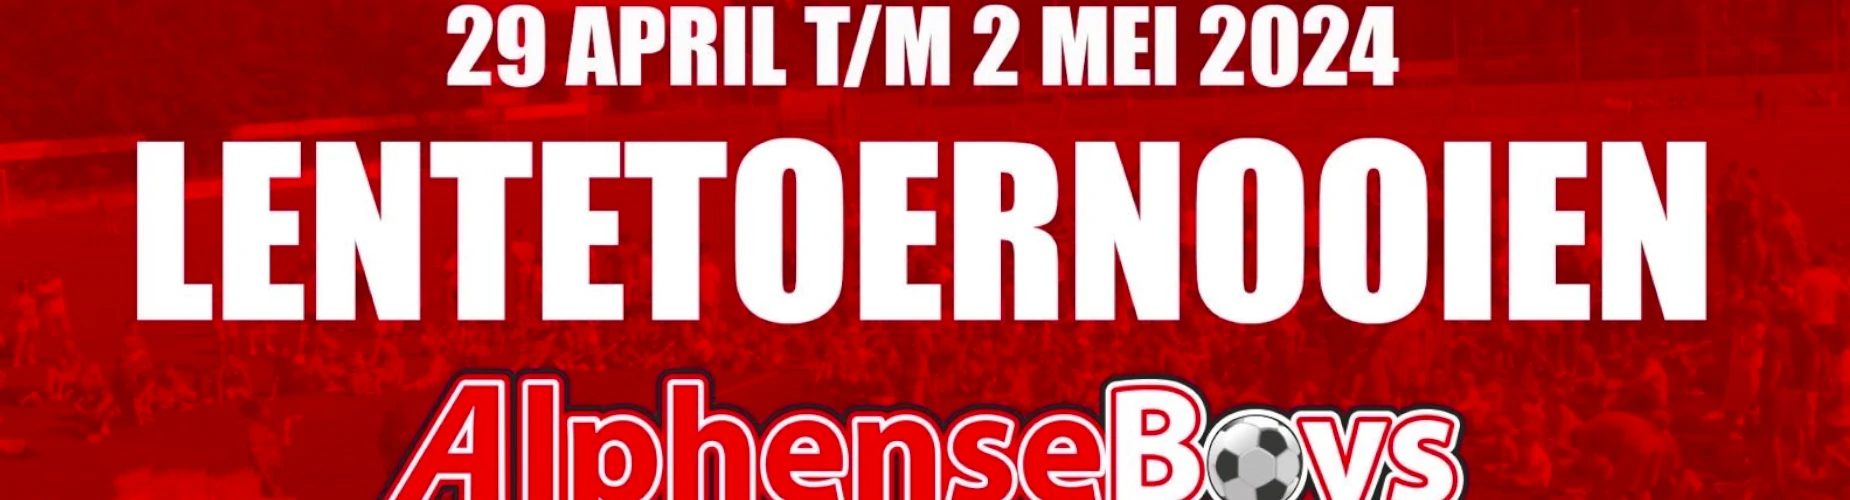 Banner - O8 - Lentetoernooi Alphense Boys - Alphense Boys - Alphen aan den Rijn